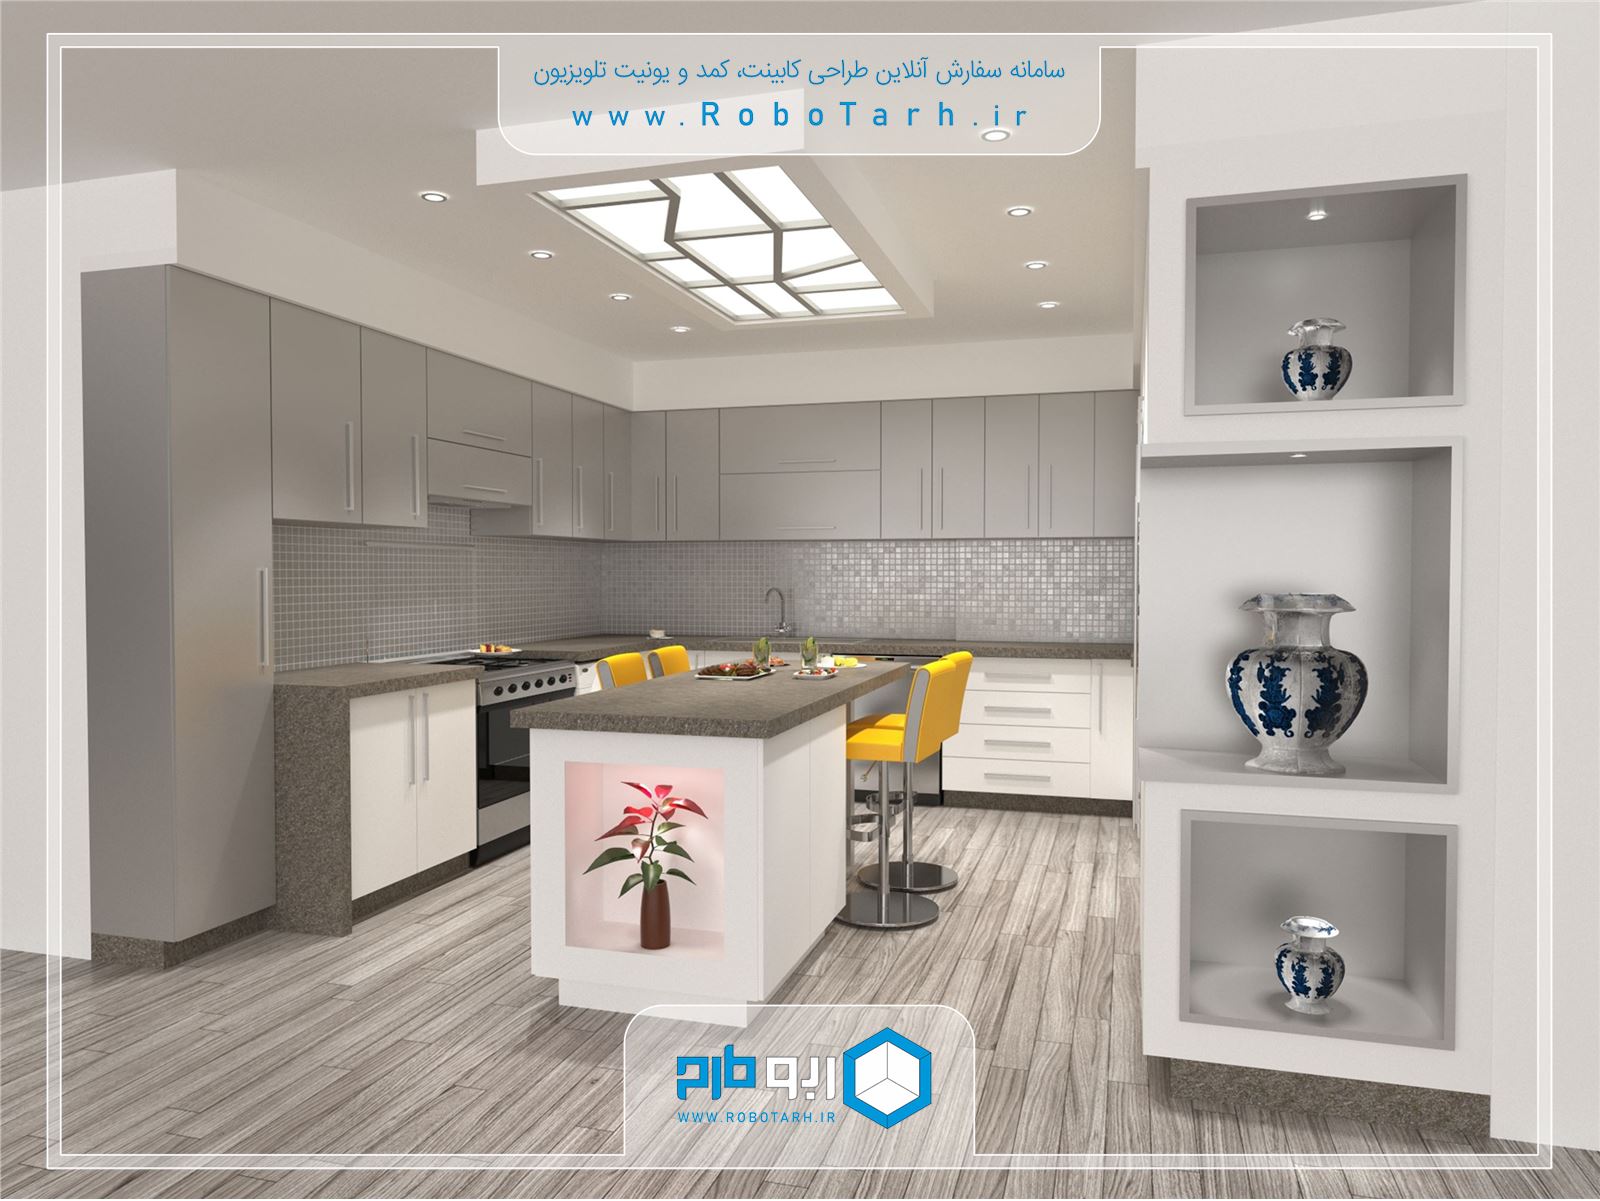 طراحی کابینت آشپزخانه مدرن سفید و خاکستری رنگ با چیدمان یو شکل - ربوطرح